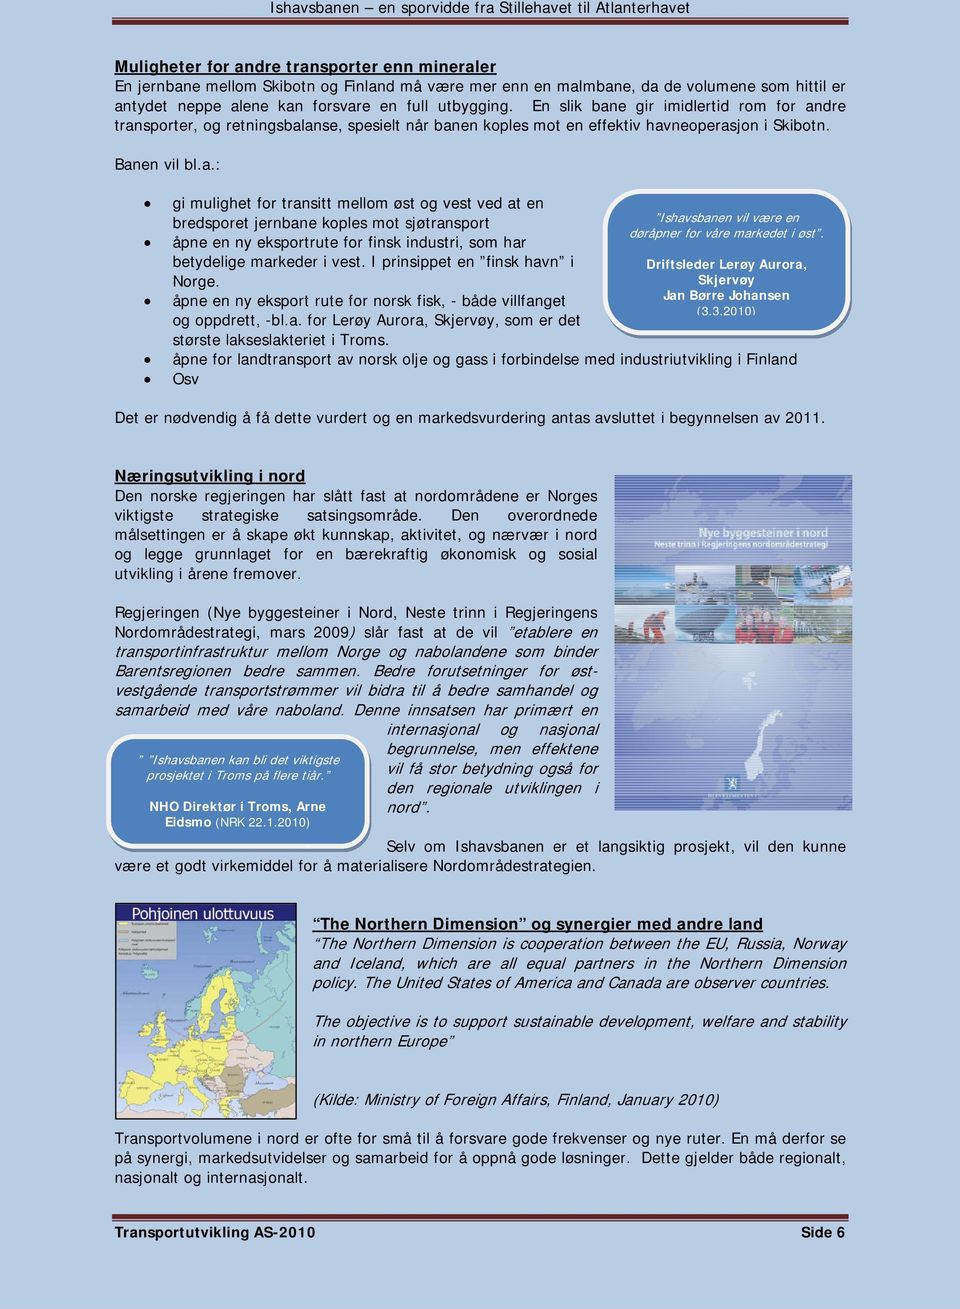 I prinsippet en finsk havn i Norge. åpne en ny eksport rute for norsk fisk, - både villfanget og oppdrett, -bl.a. for Lerøy Aurora, Skjervøy, som er det største lakseslakteriet i Troms.